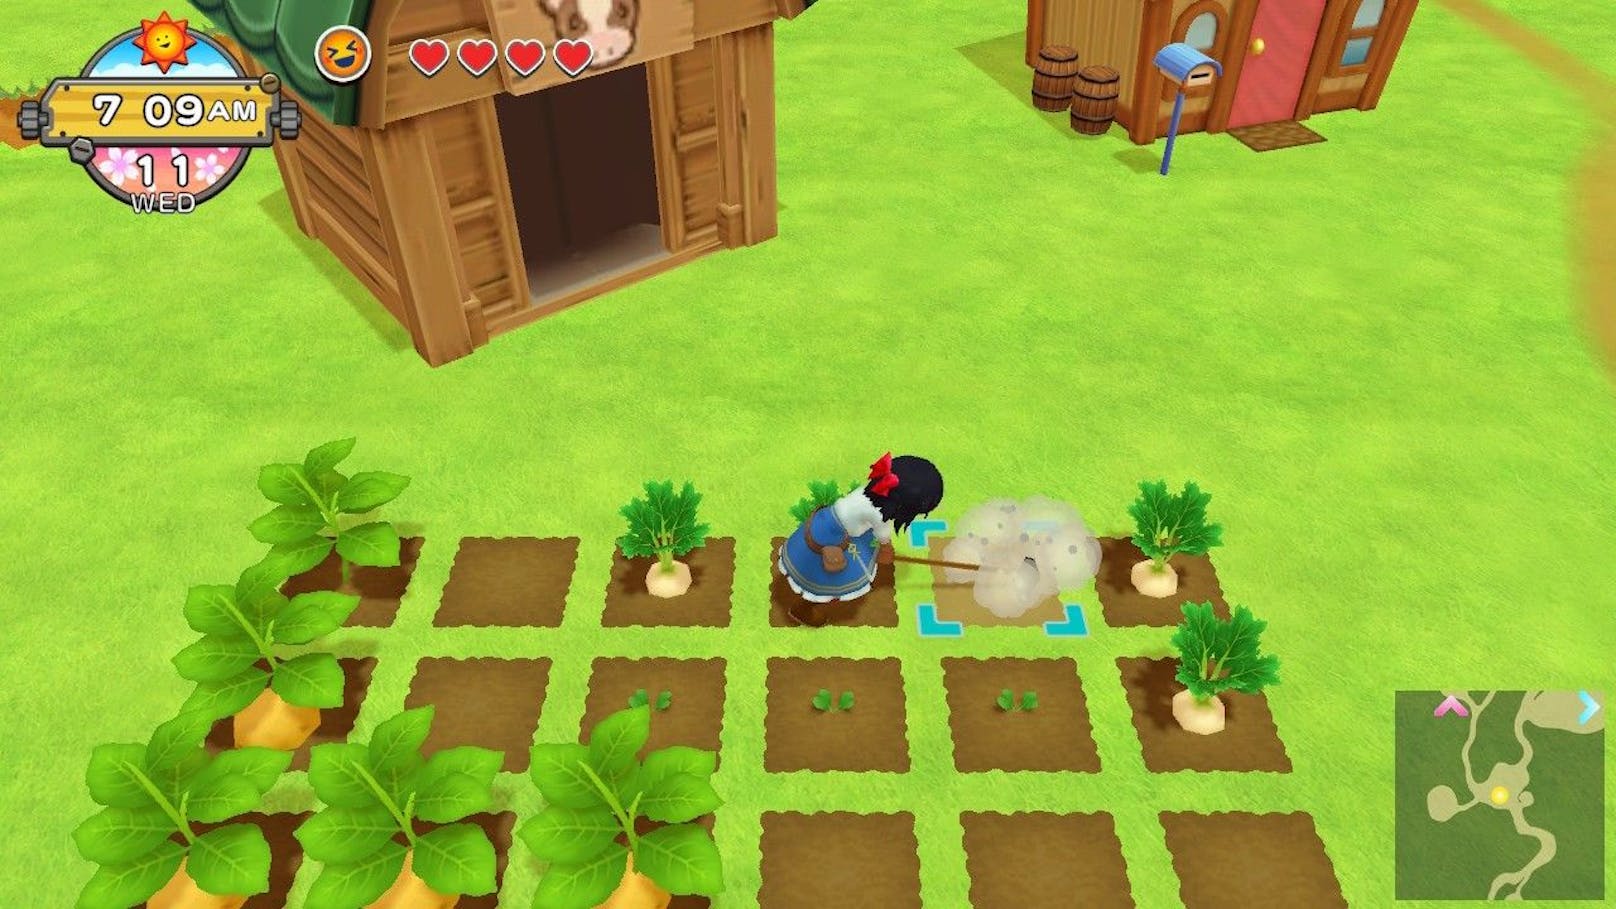 "Harvest Moon: Eine Welt" gibt es neu für die Nintendo Switch. Entgegen anderen Farming-Spielen besitzt es auch eine Handlung.&nbsp;